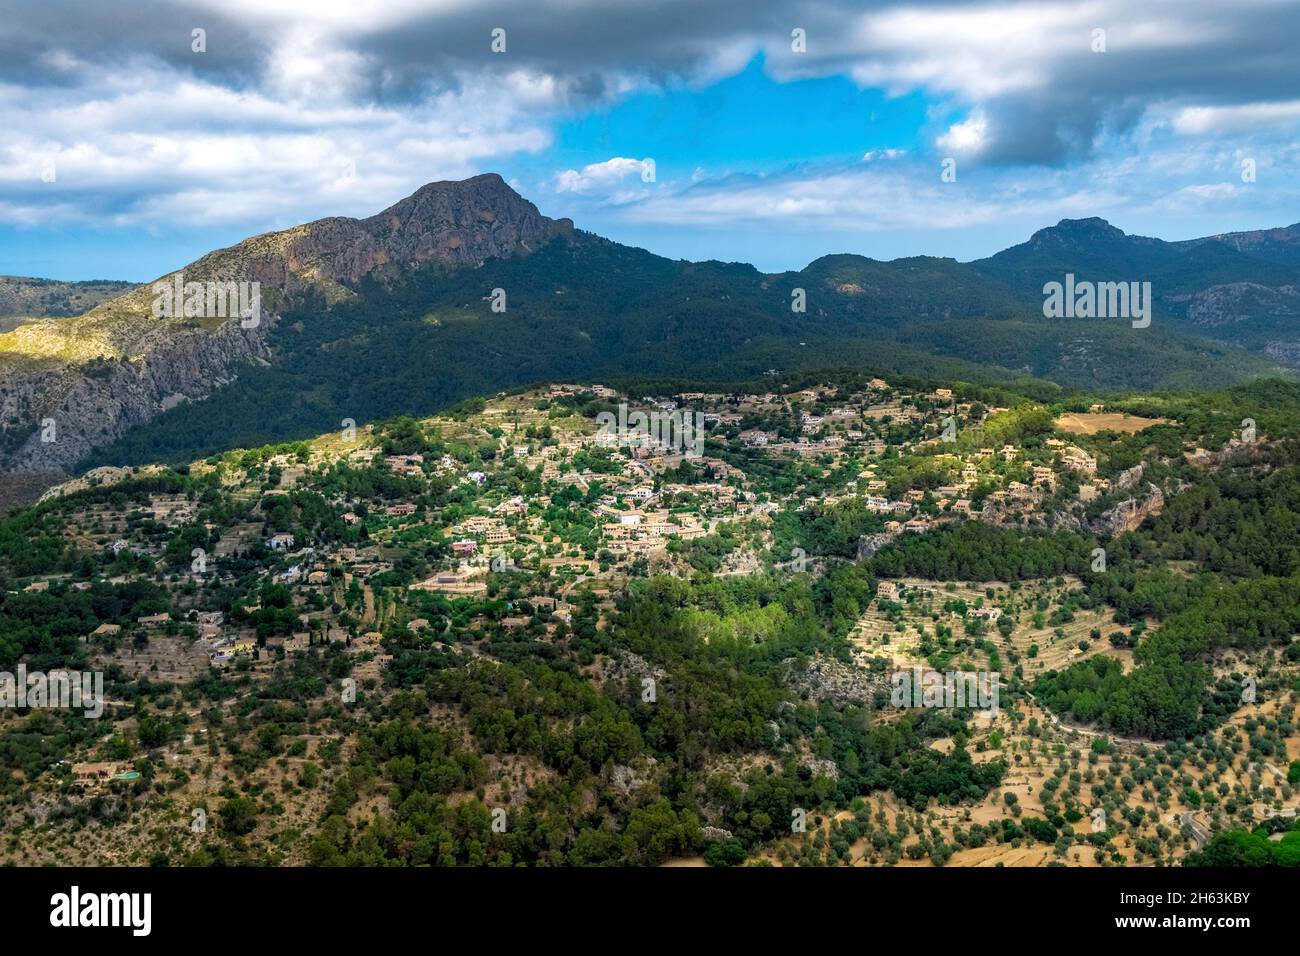 Luftaufnahme, Wohnanlage und Berg in puigpunyent, mallorca, balearen, spanien Stockfoto